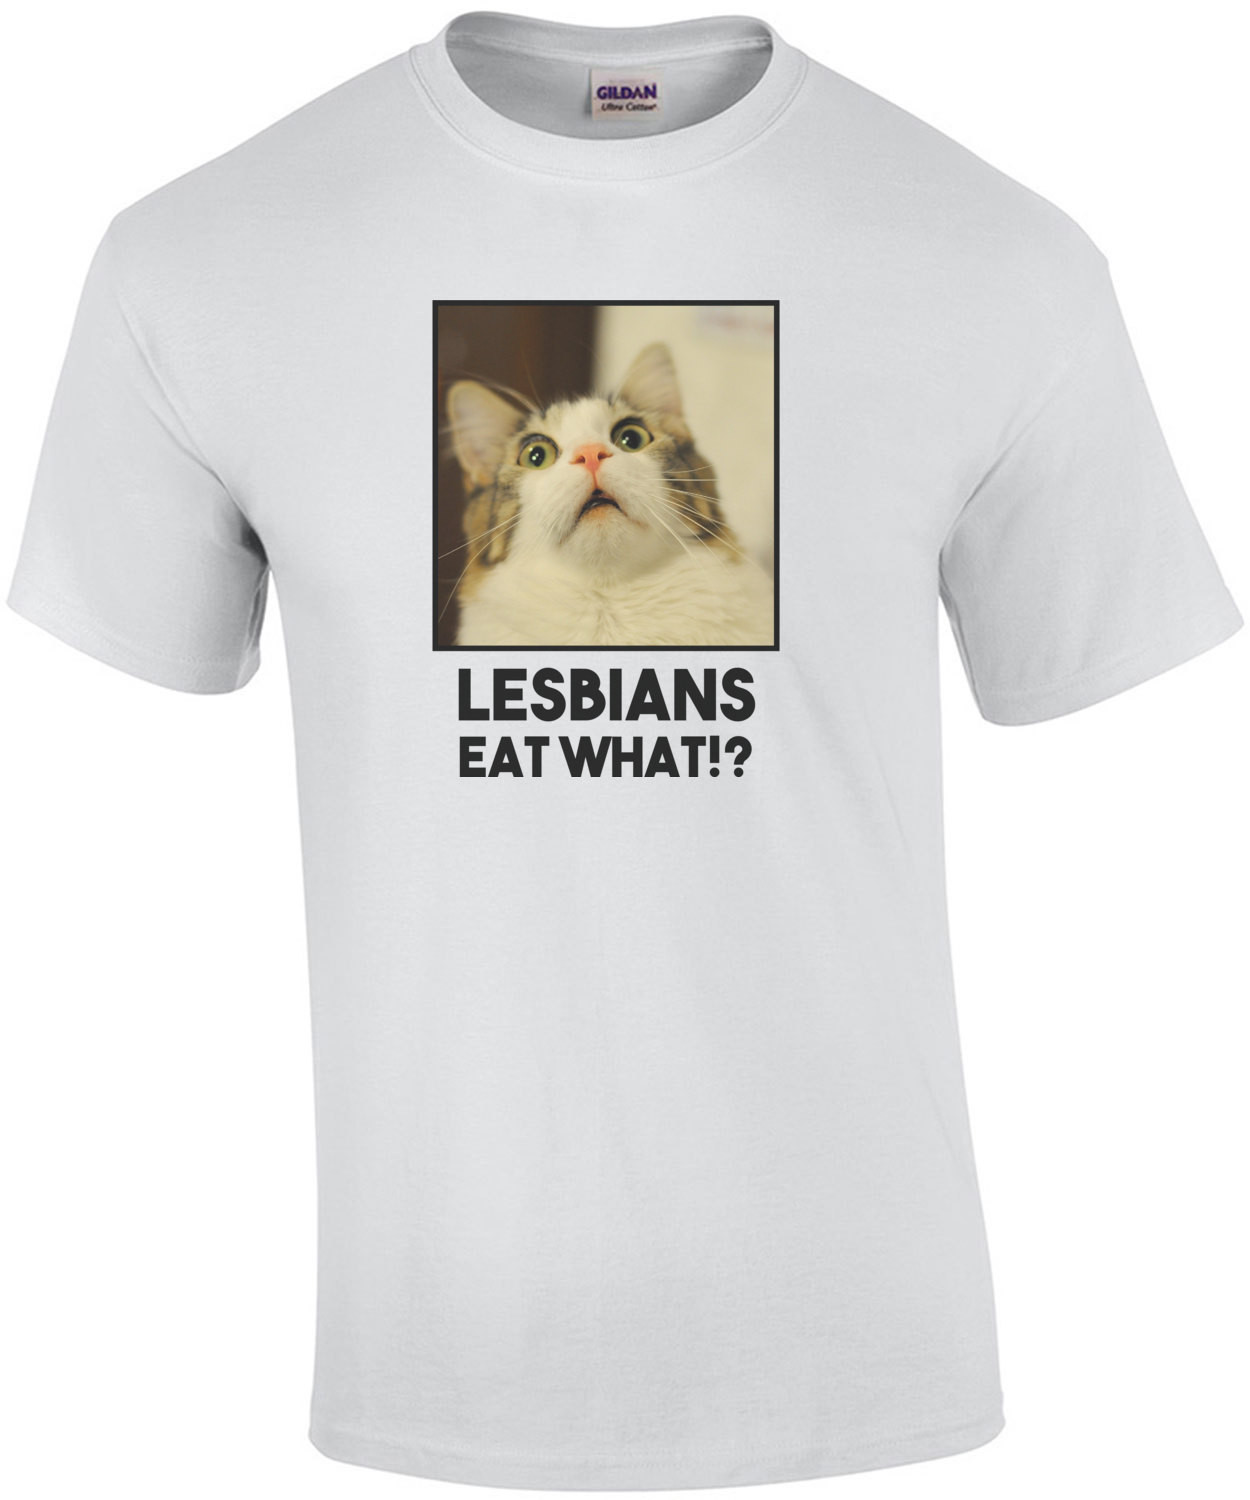 Lesbians eat what!? - Lesbian T-Shirt